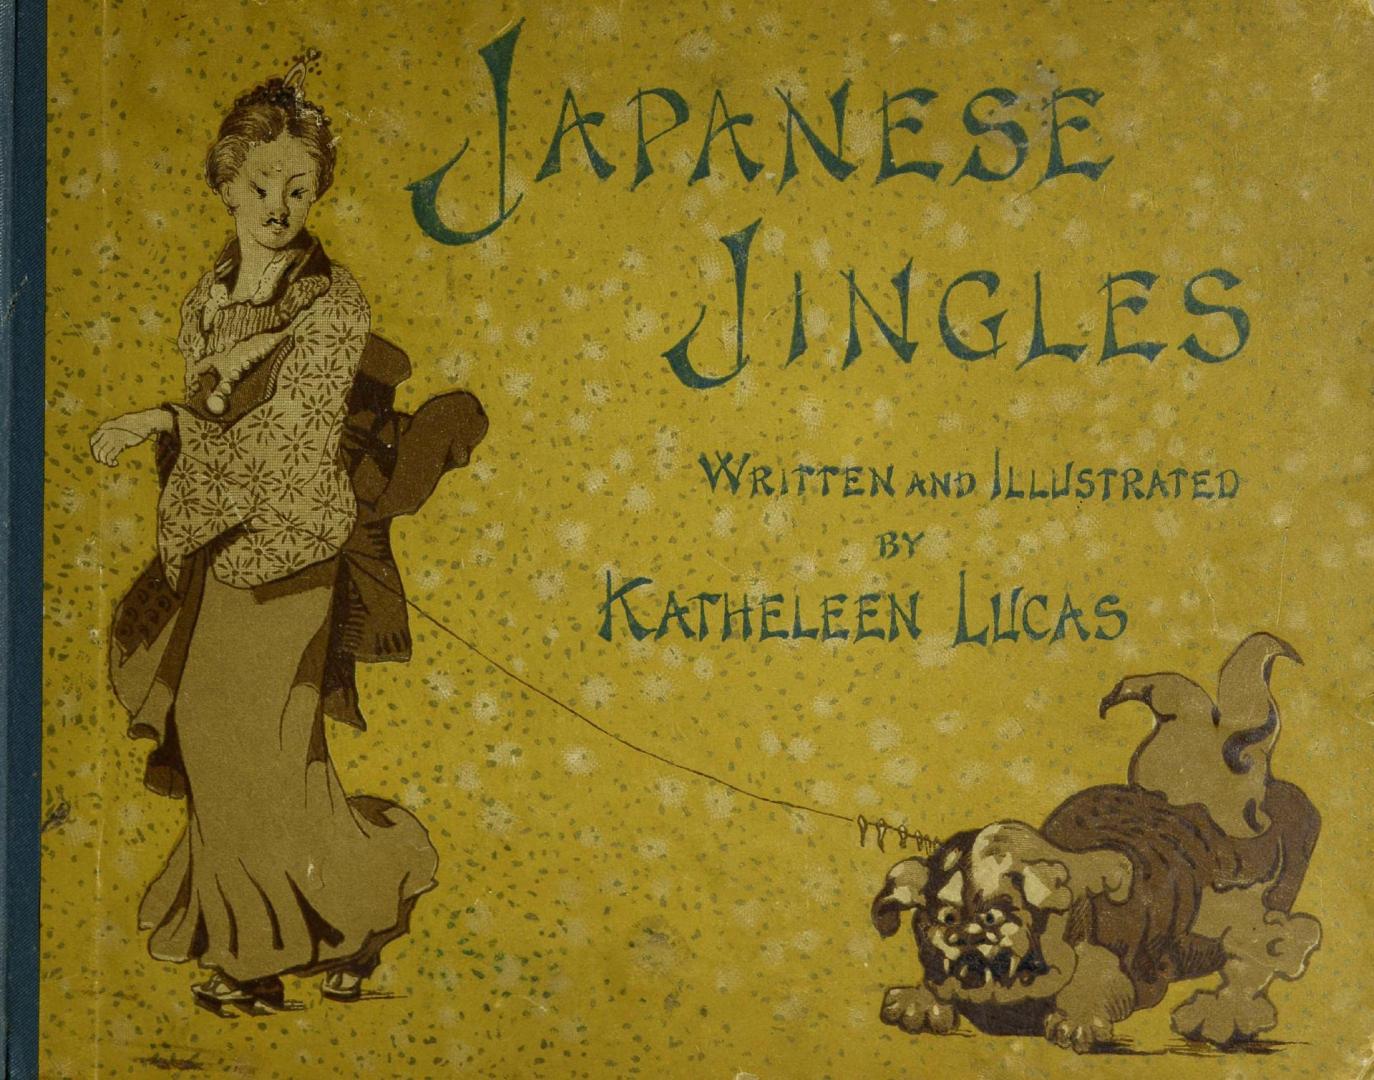 Japanese jingles